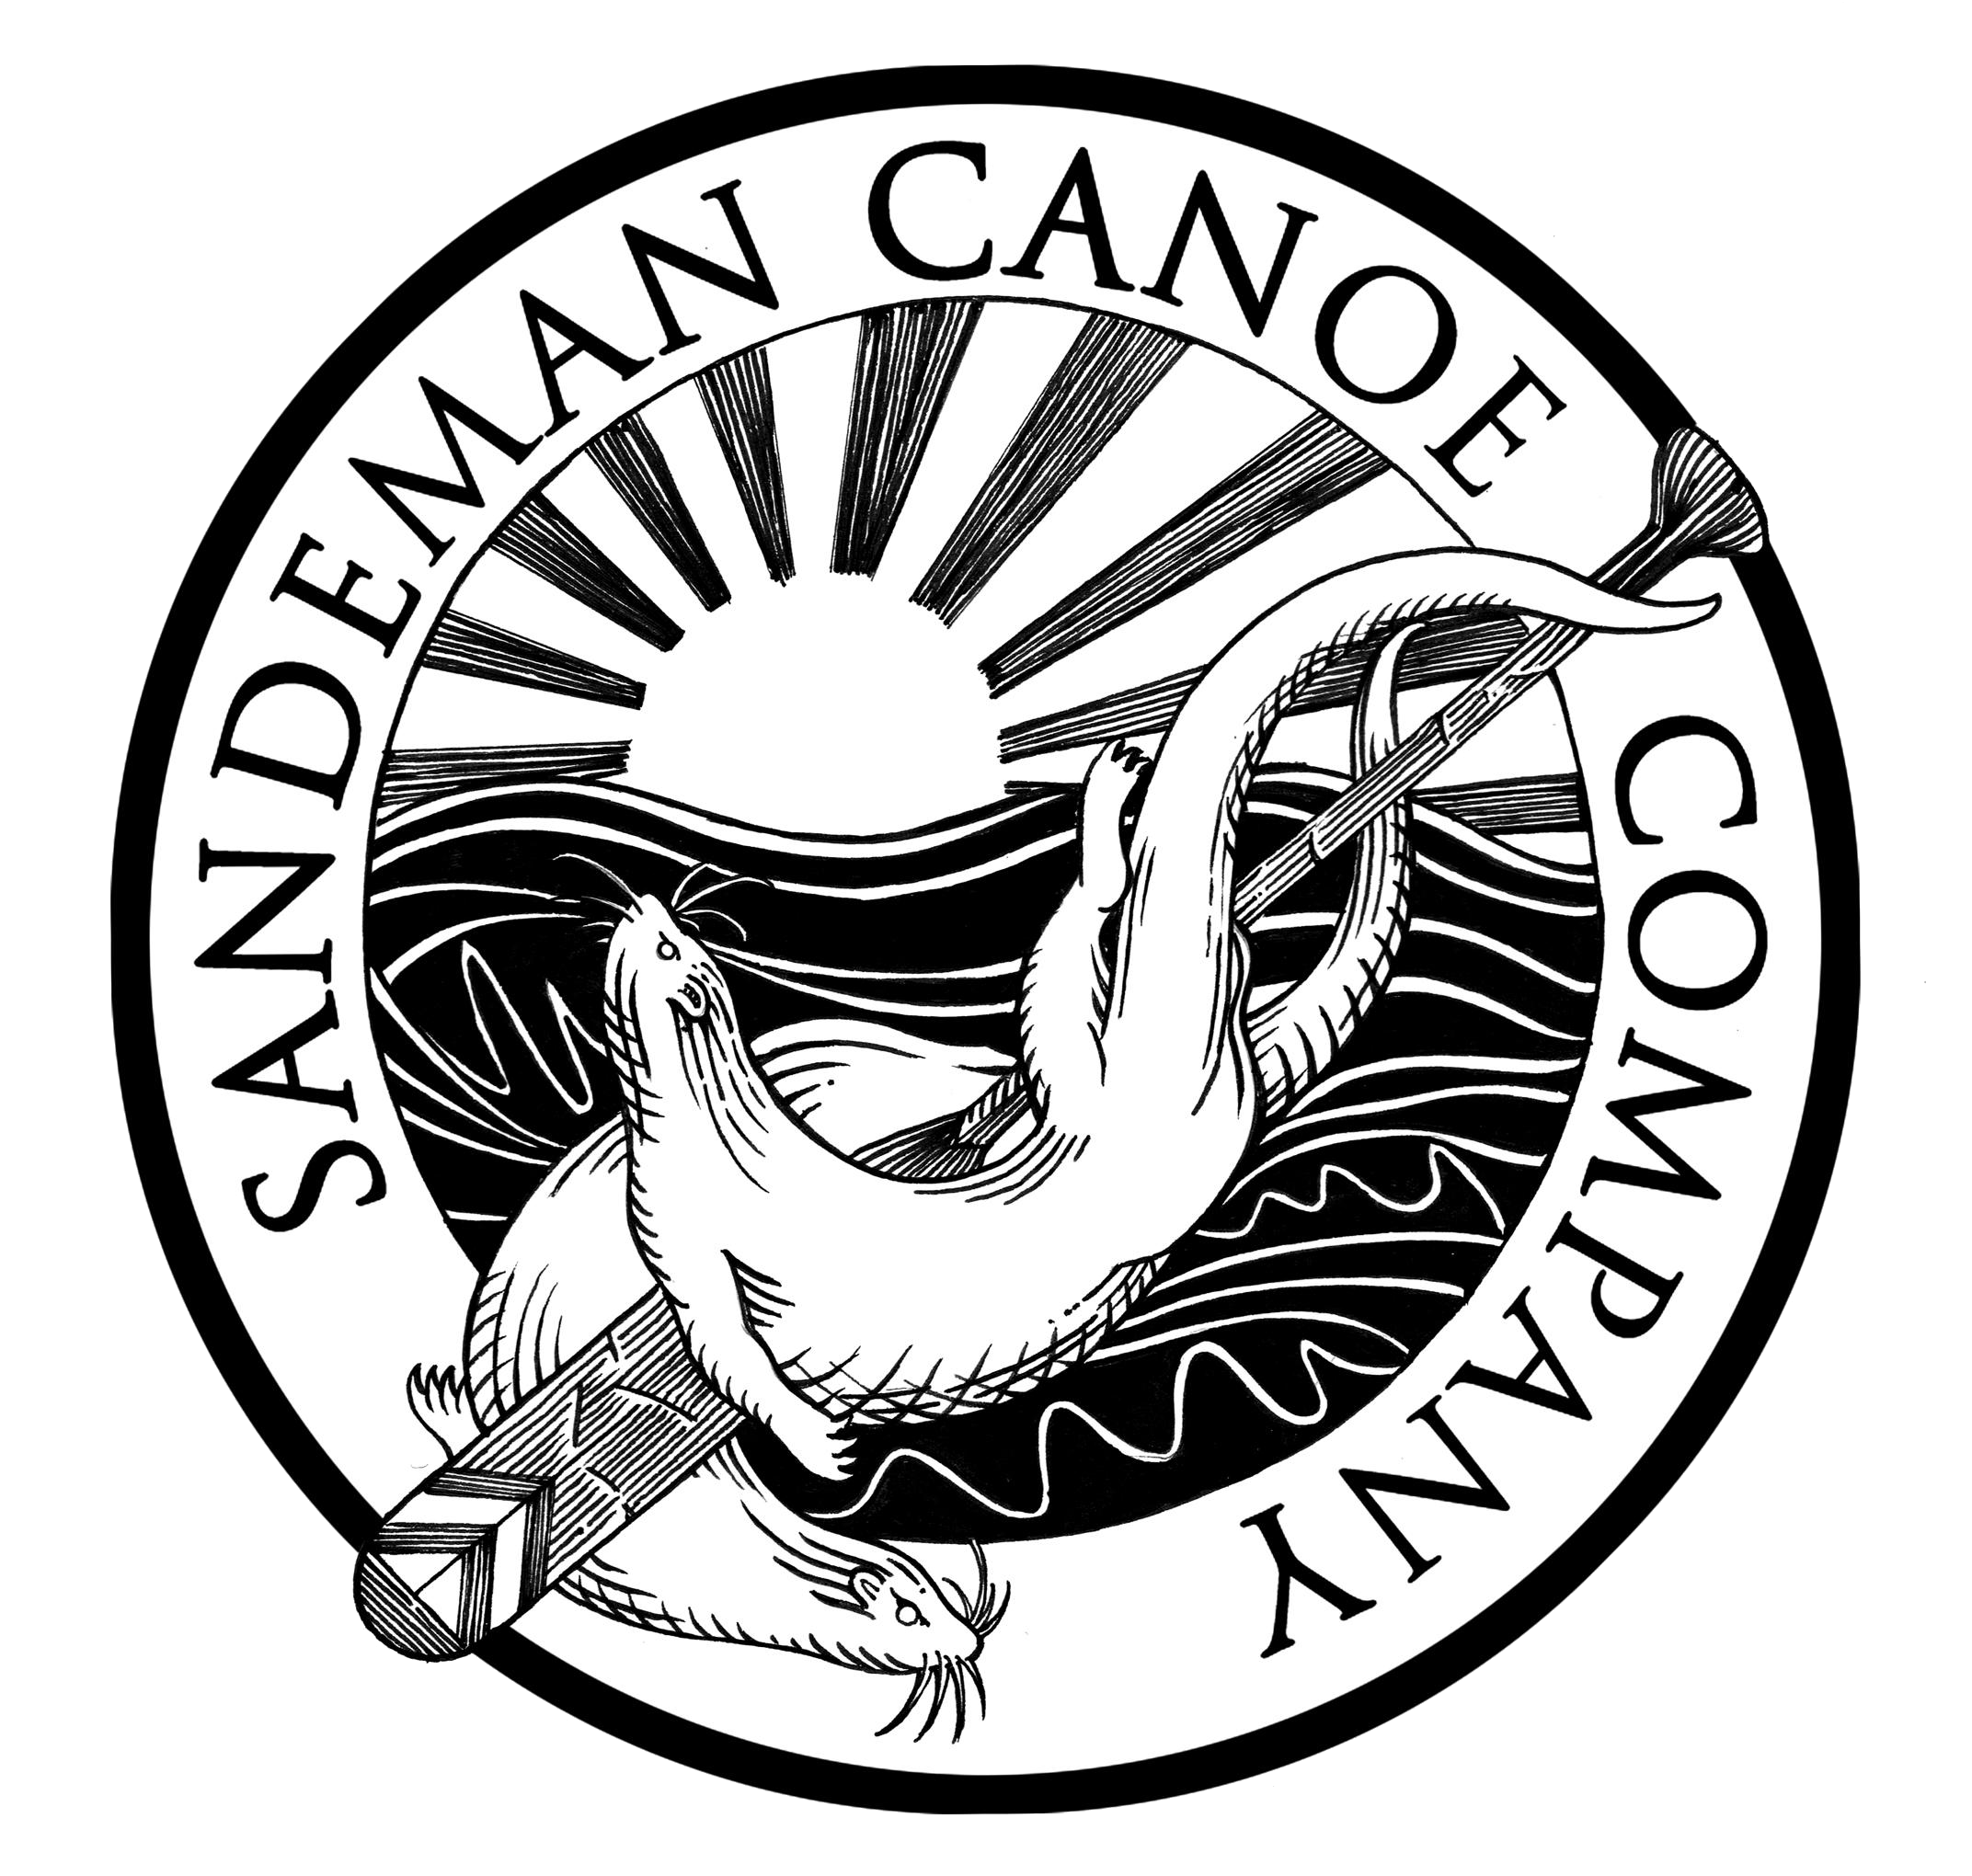 Sandeman Canoe Company